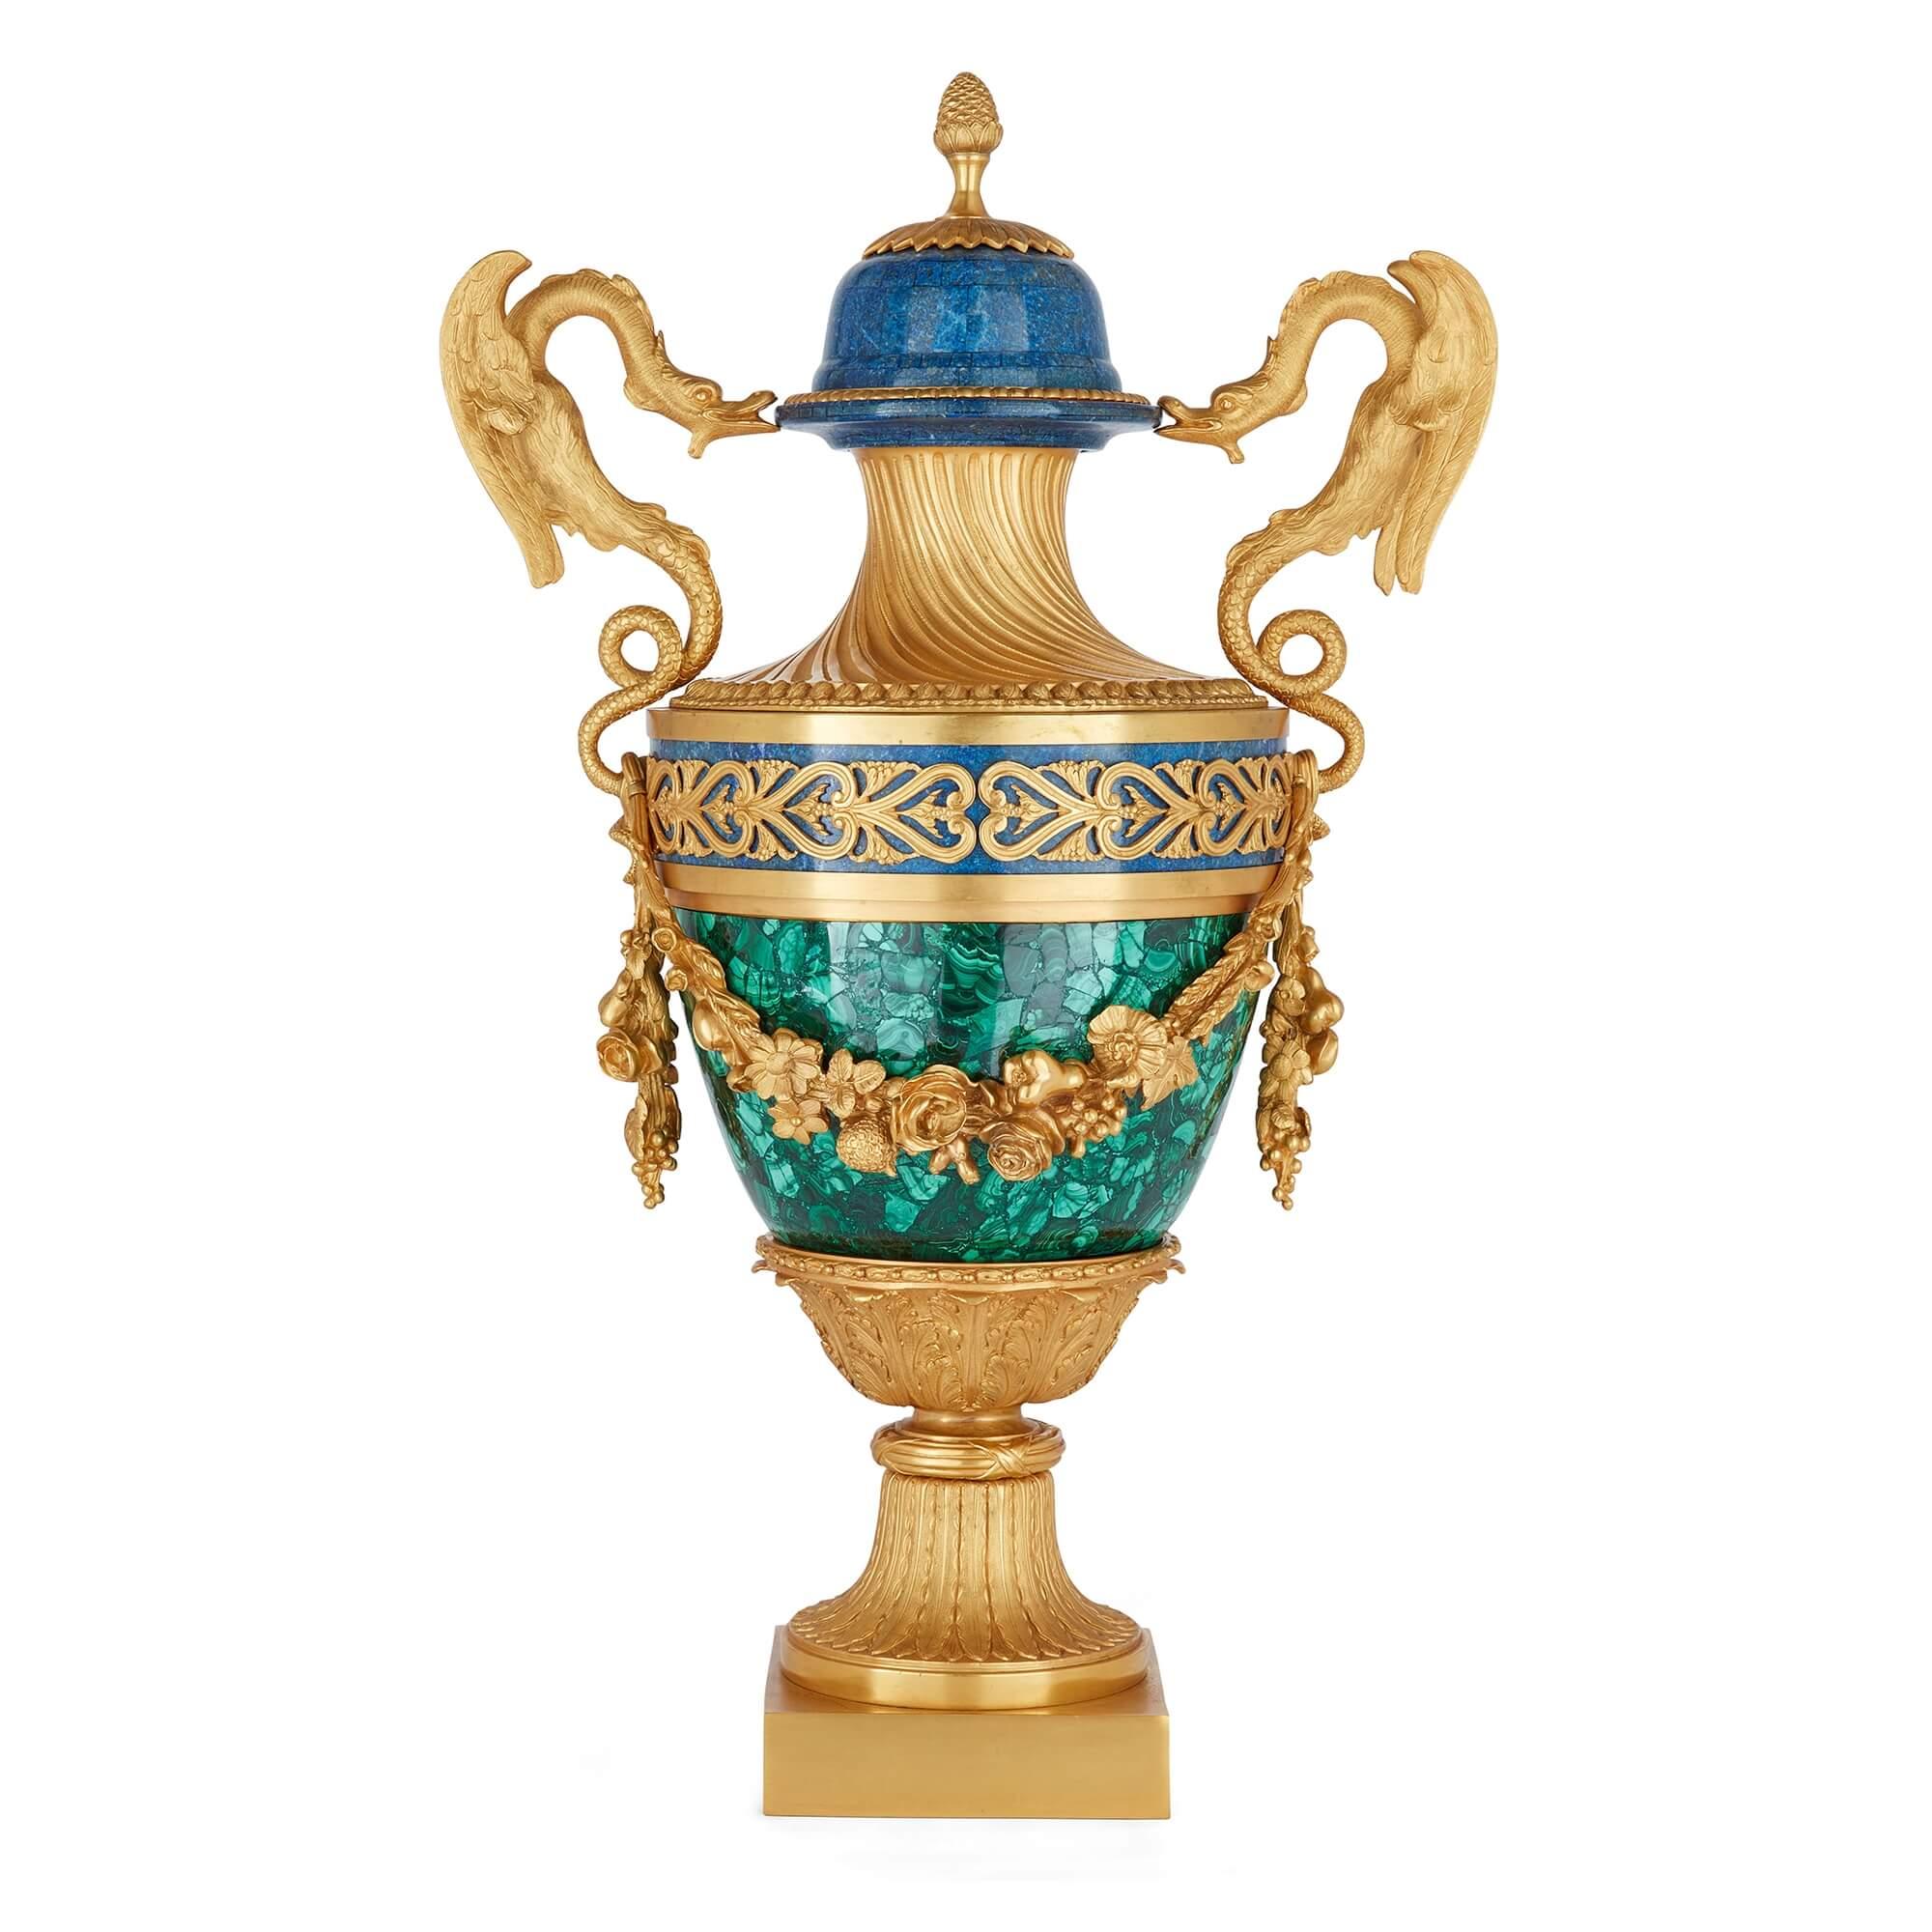 Paar Vasen im französischen Empire-Stil aus Malachit, Lapislazuli und Ormolu
Französisch, 20. Jahrhundert
Höhe 78cm, Breite 47cm, Tiefe 30cm

Die ungewöhnliche Mischung der Materialien, aus denen diese Vasen gefertigt sind, macht sie zu einer